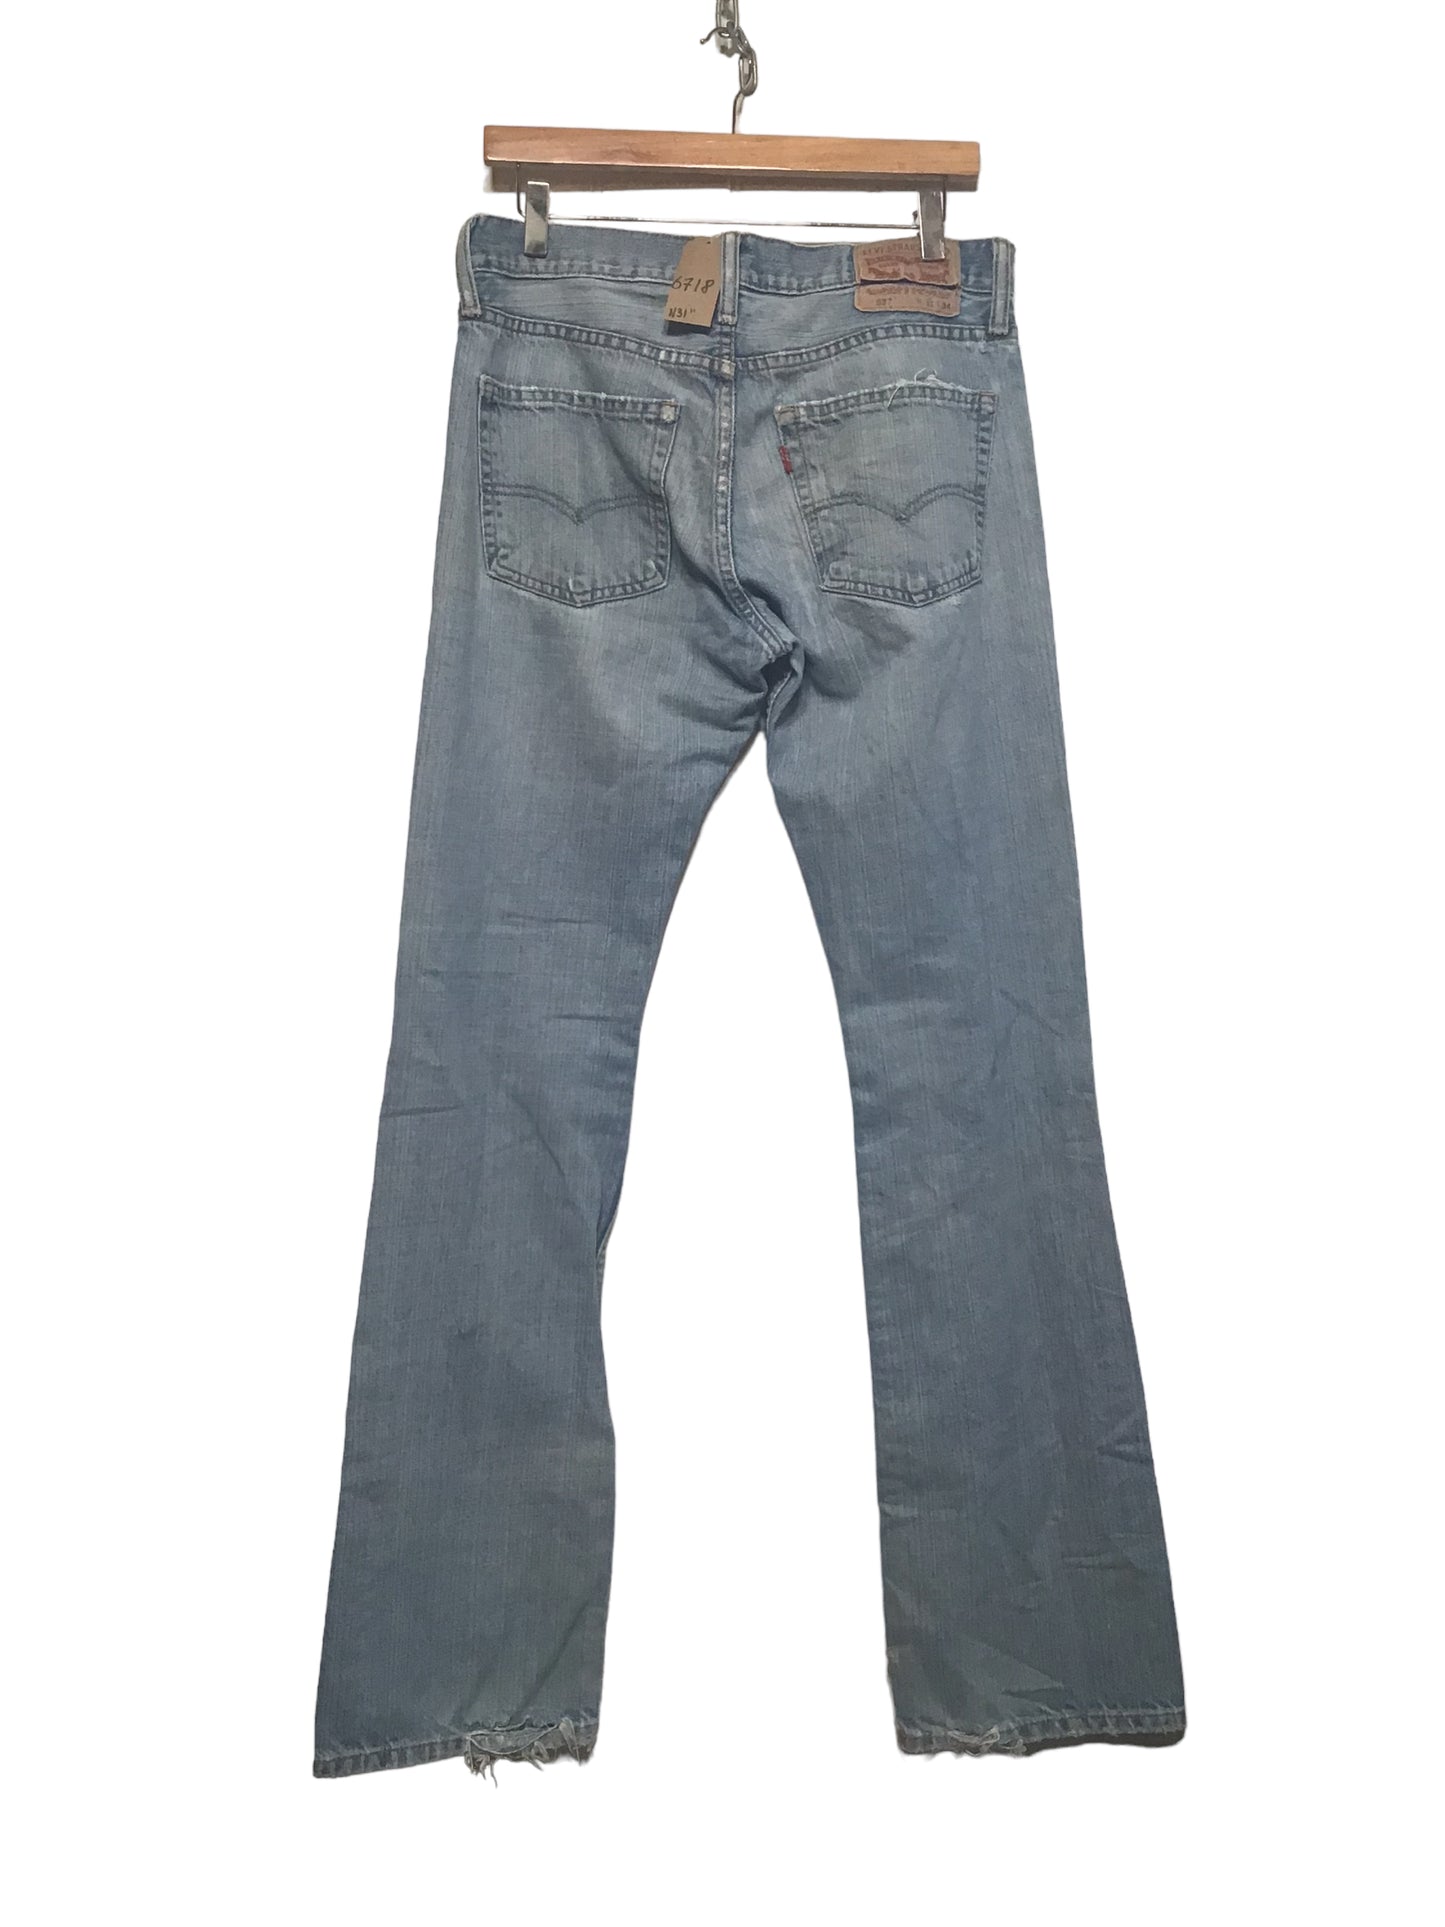 Levi 527 Jeans (31x34)